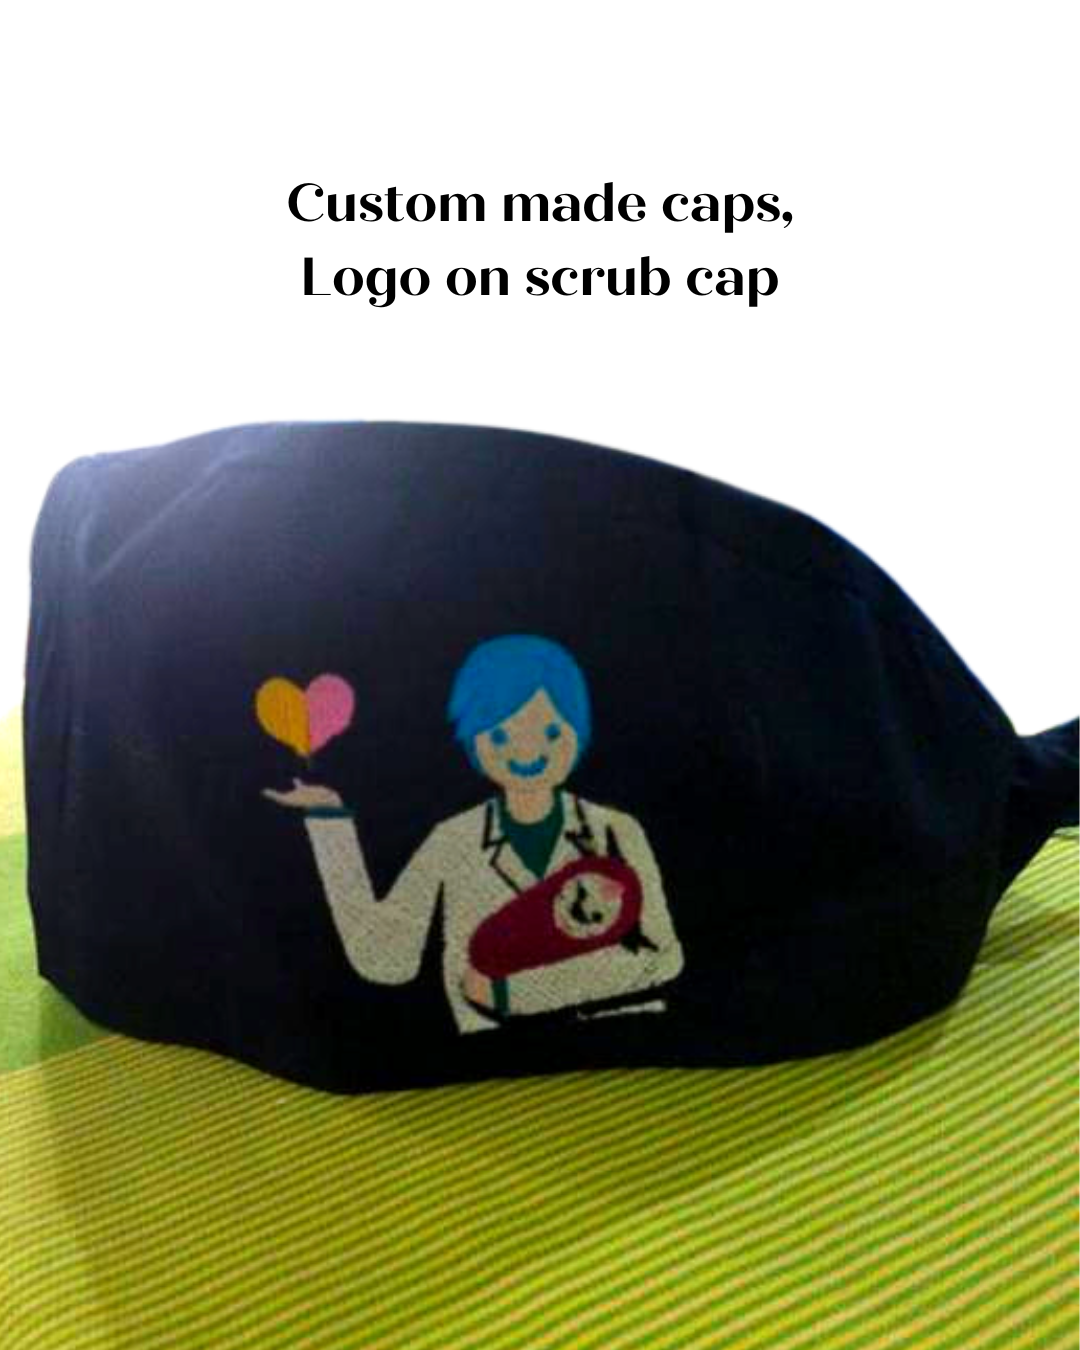 Customisable scrub cap